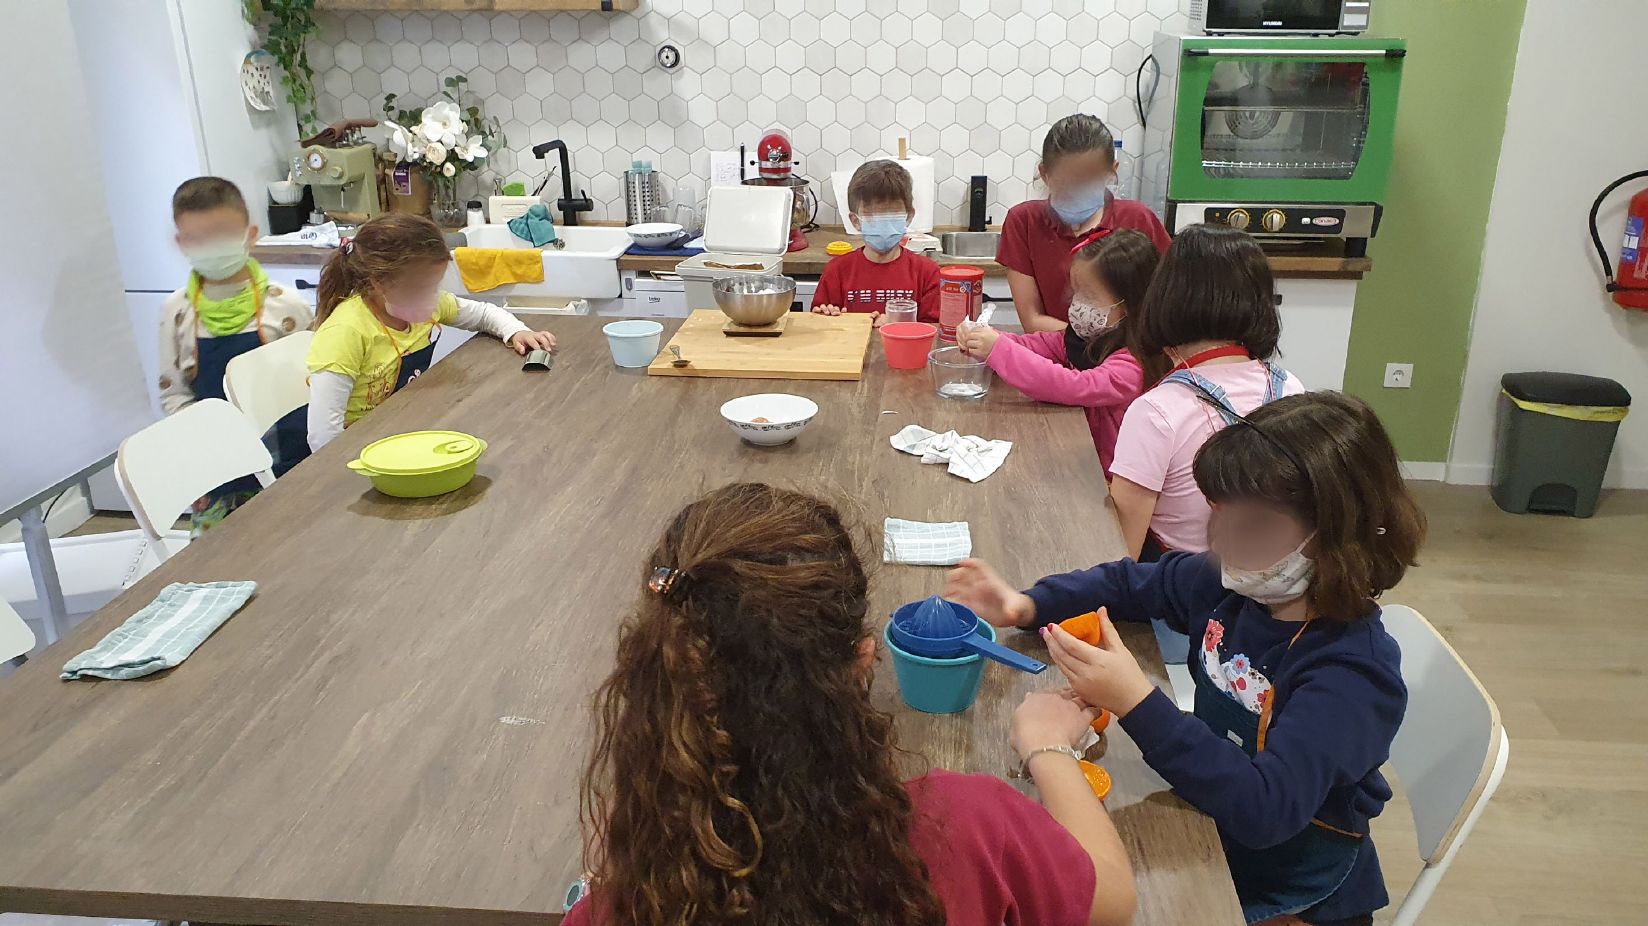 clase extraescolar cocina la tata rubi grupo mixto edades infantiles